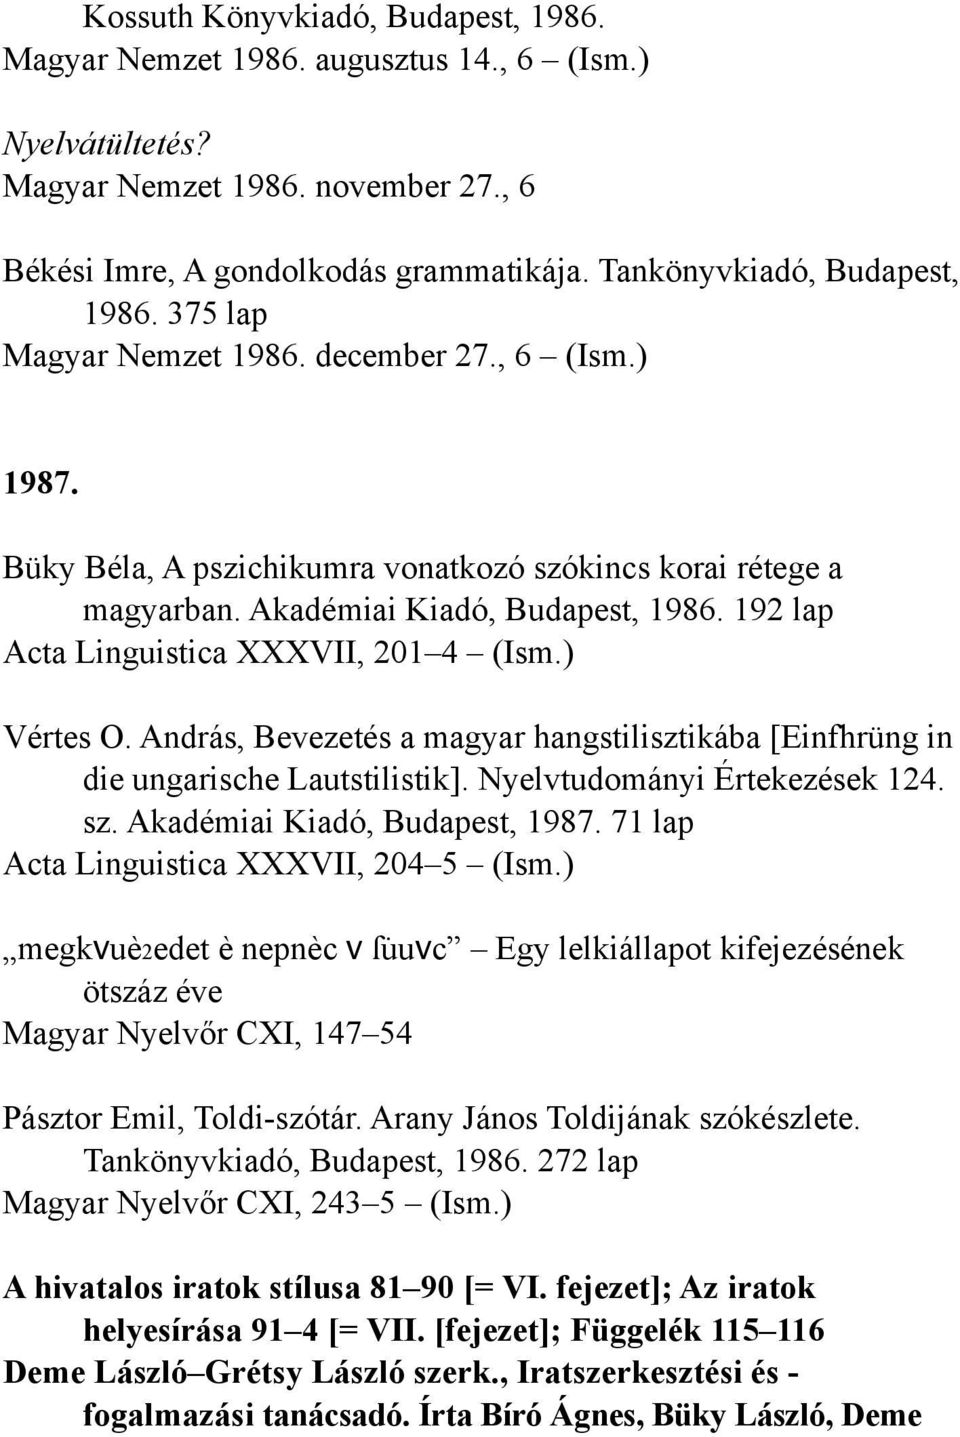 192 lap Acta Linguistica XXXVII, 201 4 (Ism.) Vértes O. András, Bevezetés a magyar hangstilisztikába [Einfhrüng in die ungarische Lautstilistik]. Nyelvtudományi Értekezések 124. sz.